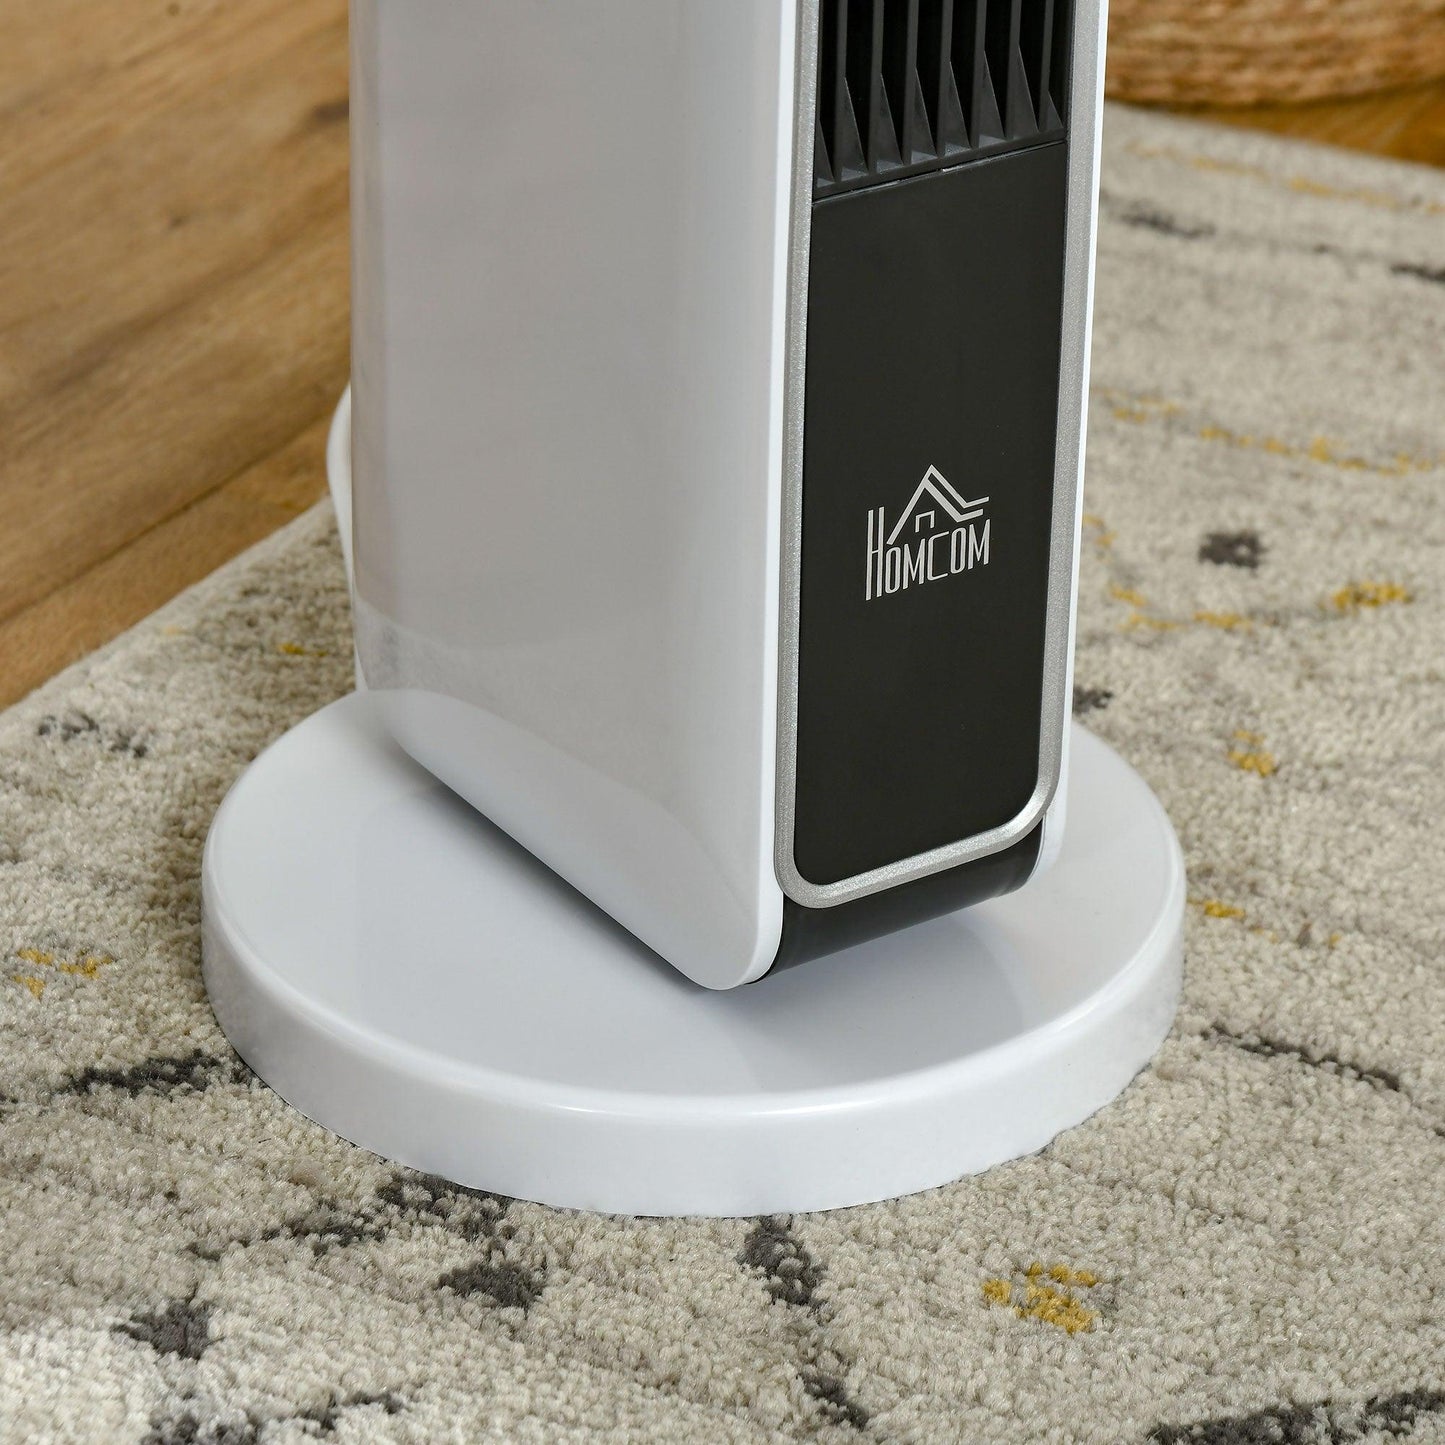 HOMCOM Ceramic Tower Heater with Remote Control - ALL4U RETAILER LTD